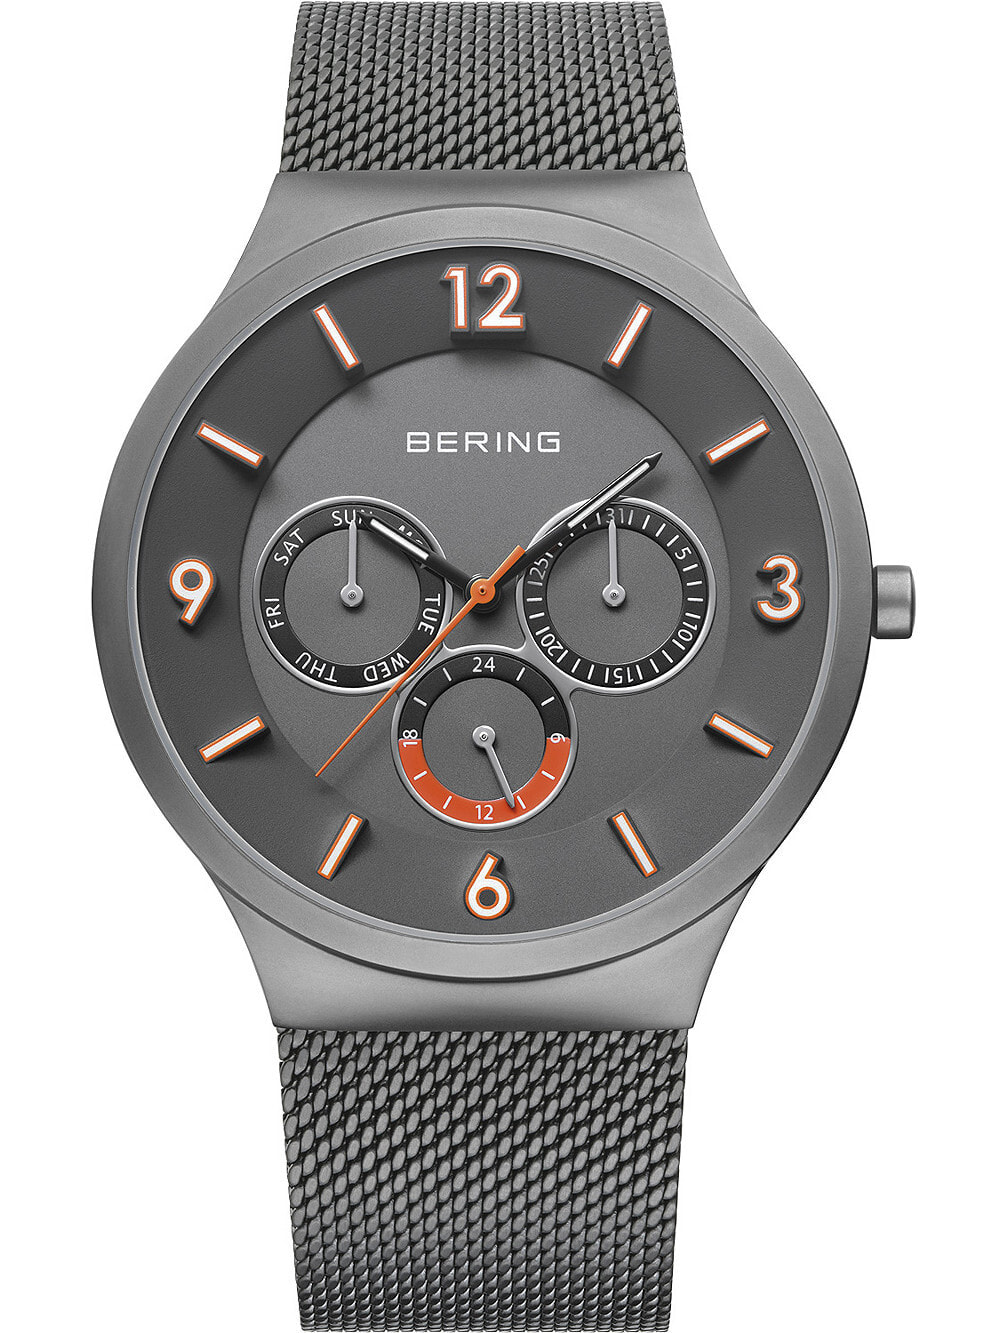 Мужские наручные часы со стальным браслетом Bering 33441-377 Classic mens 41mm 3ATM